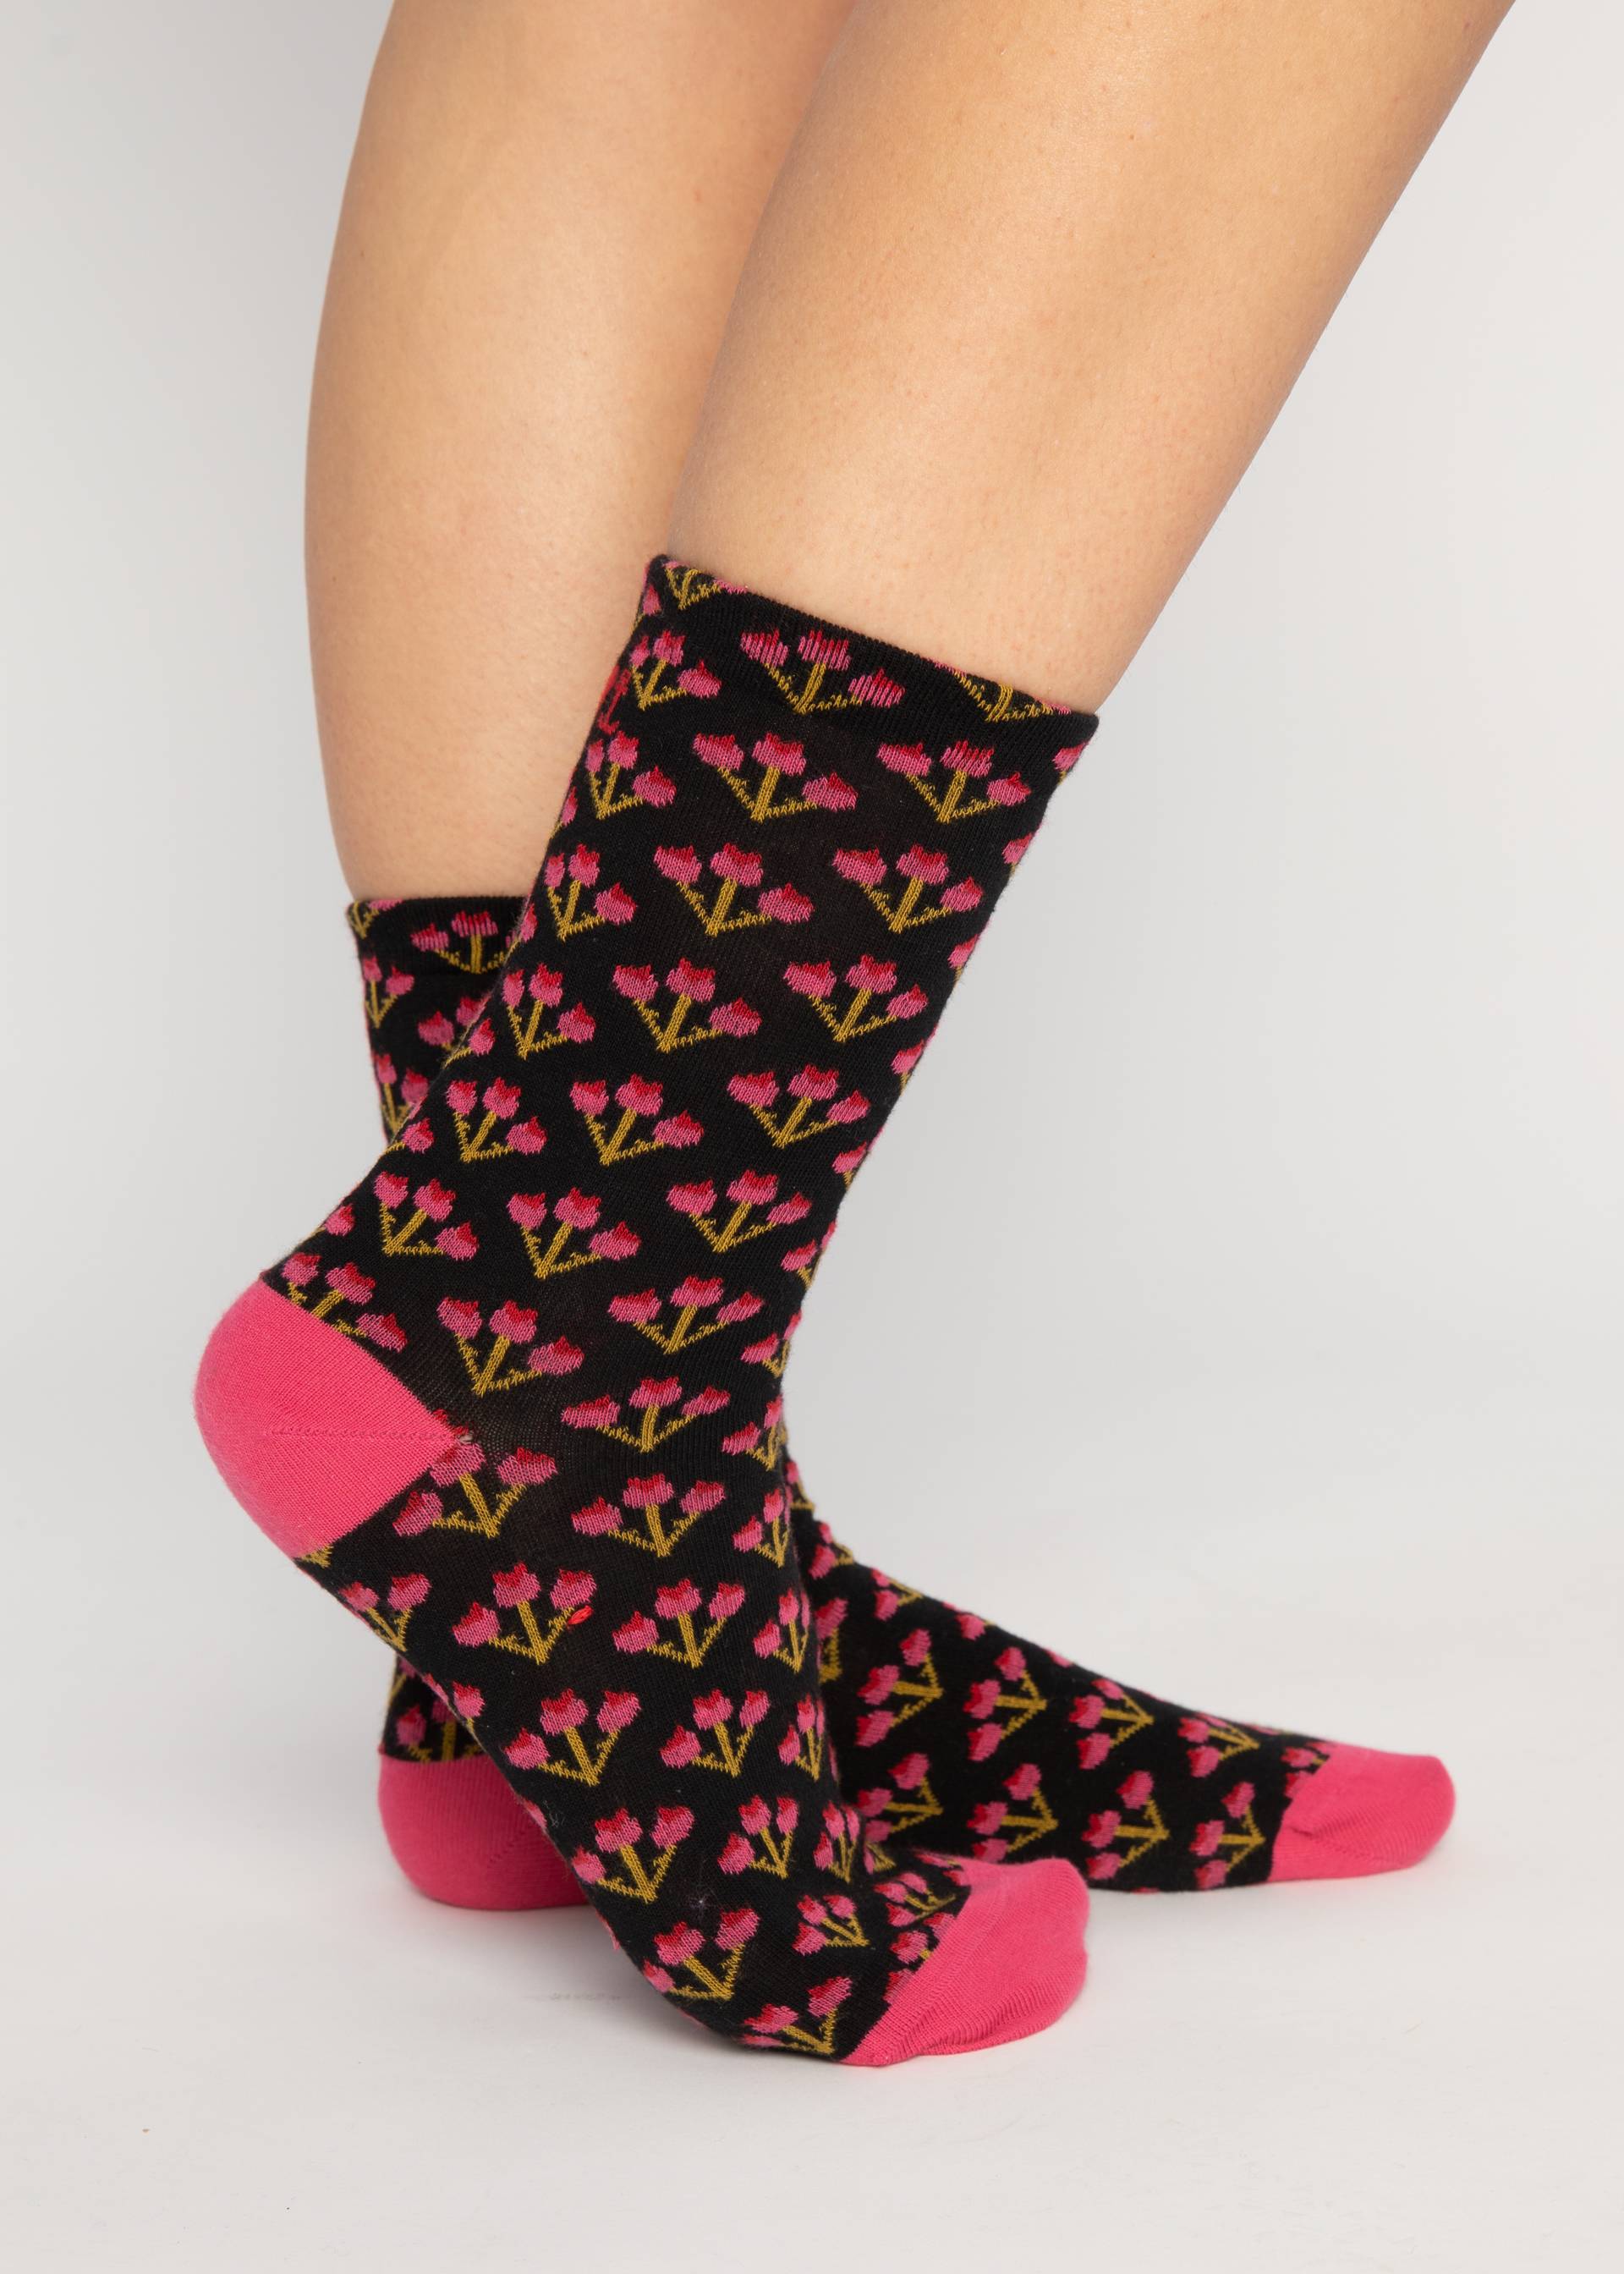 Baumwollsocken Sensational Steps, romantic sunset socks, Socken, Schwarz